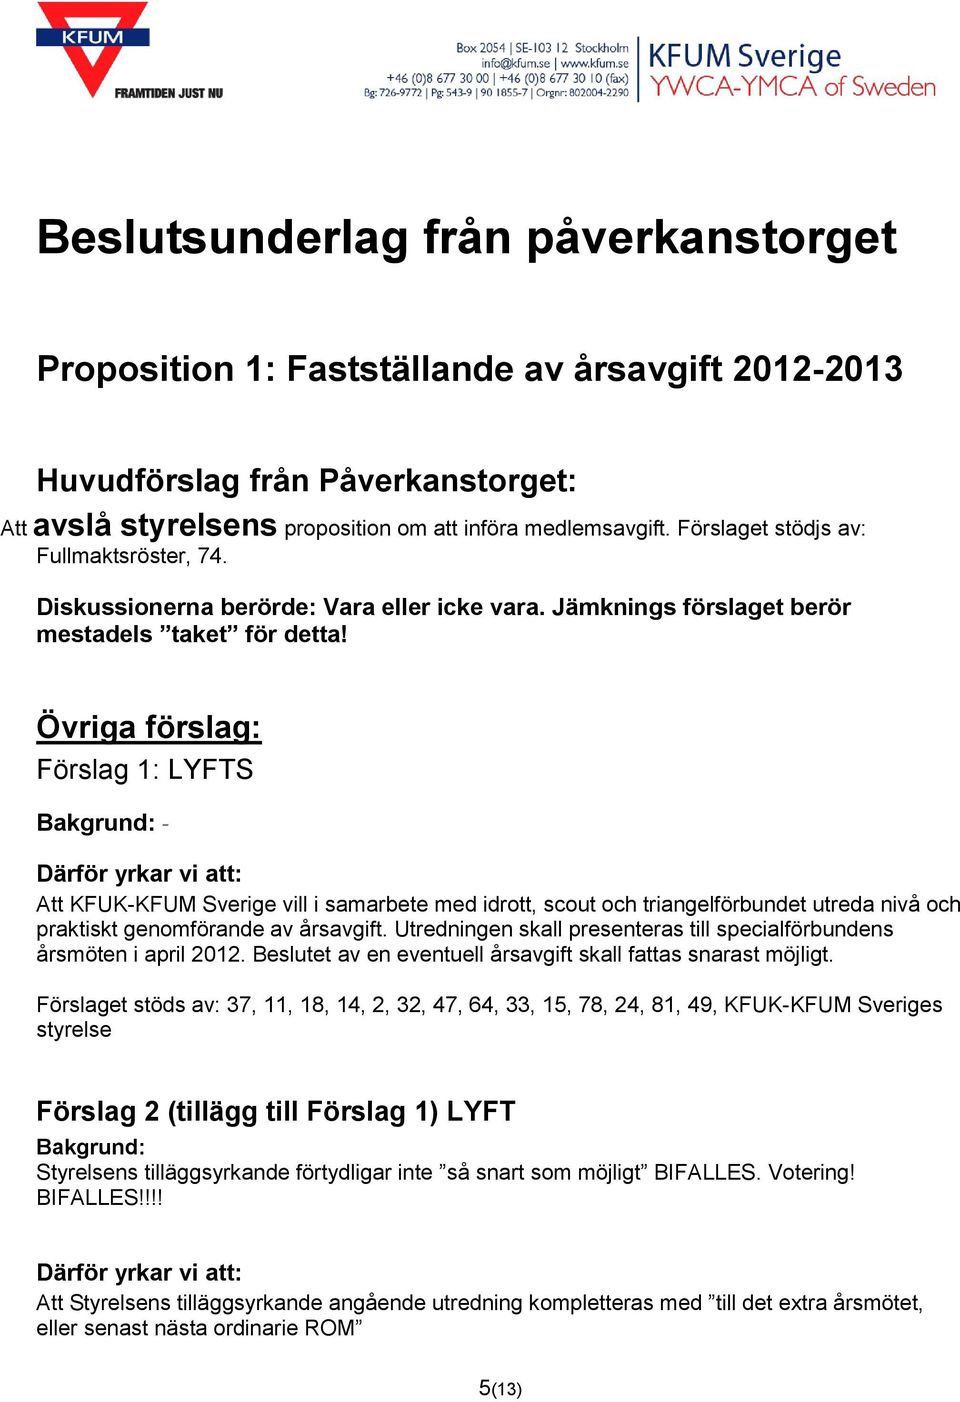 Övriga förslag: Förslag 1: LYFTS - Att KFUK-KFUM Sverige vill i samarbete med idrott, scout och triangelförbundet utreda nivå och praktiskt genomförande av årsavgift.